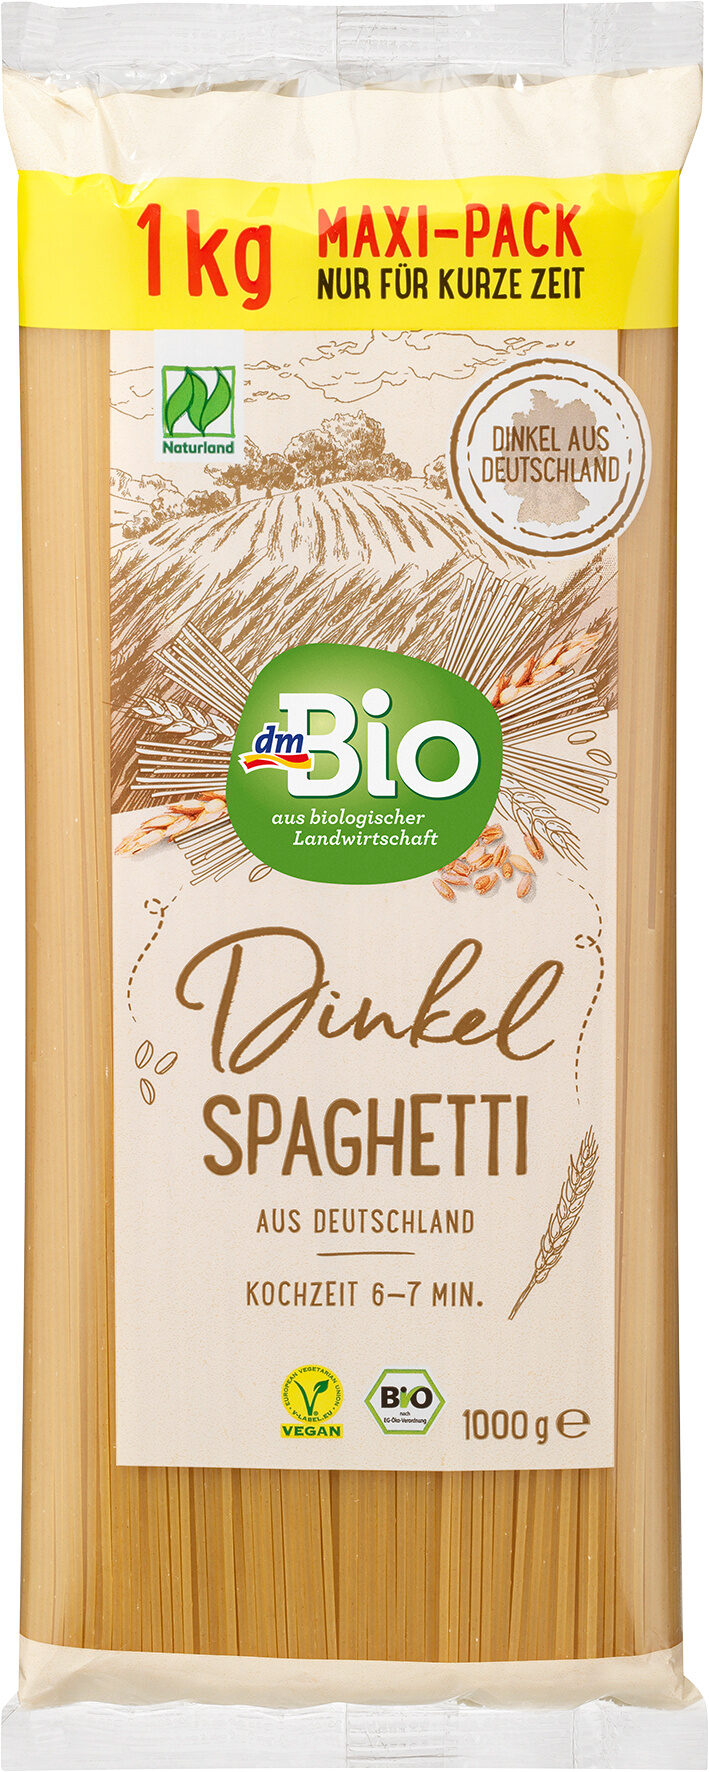 Dinkel Spaghetti aus Deutschland - Product - de